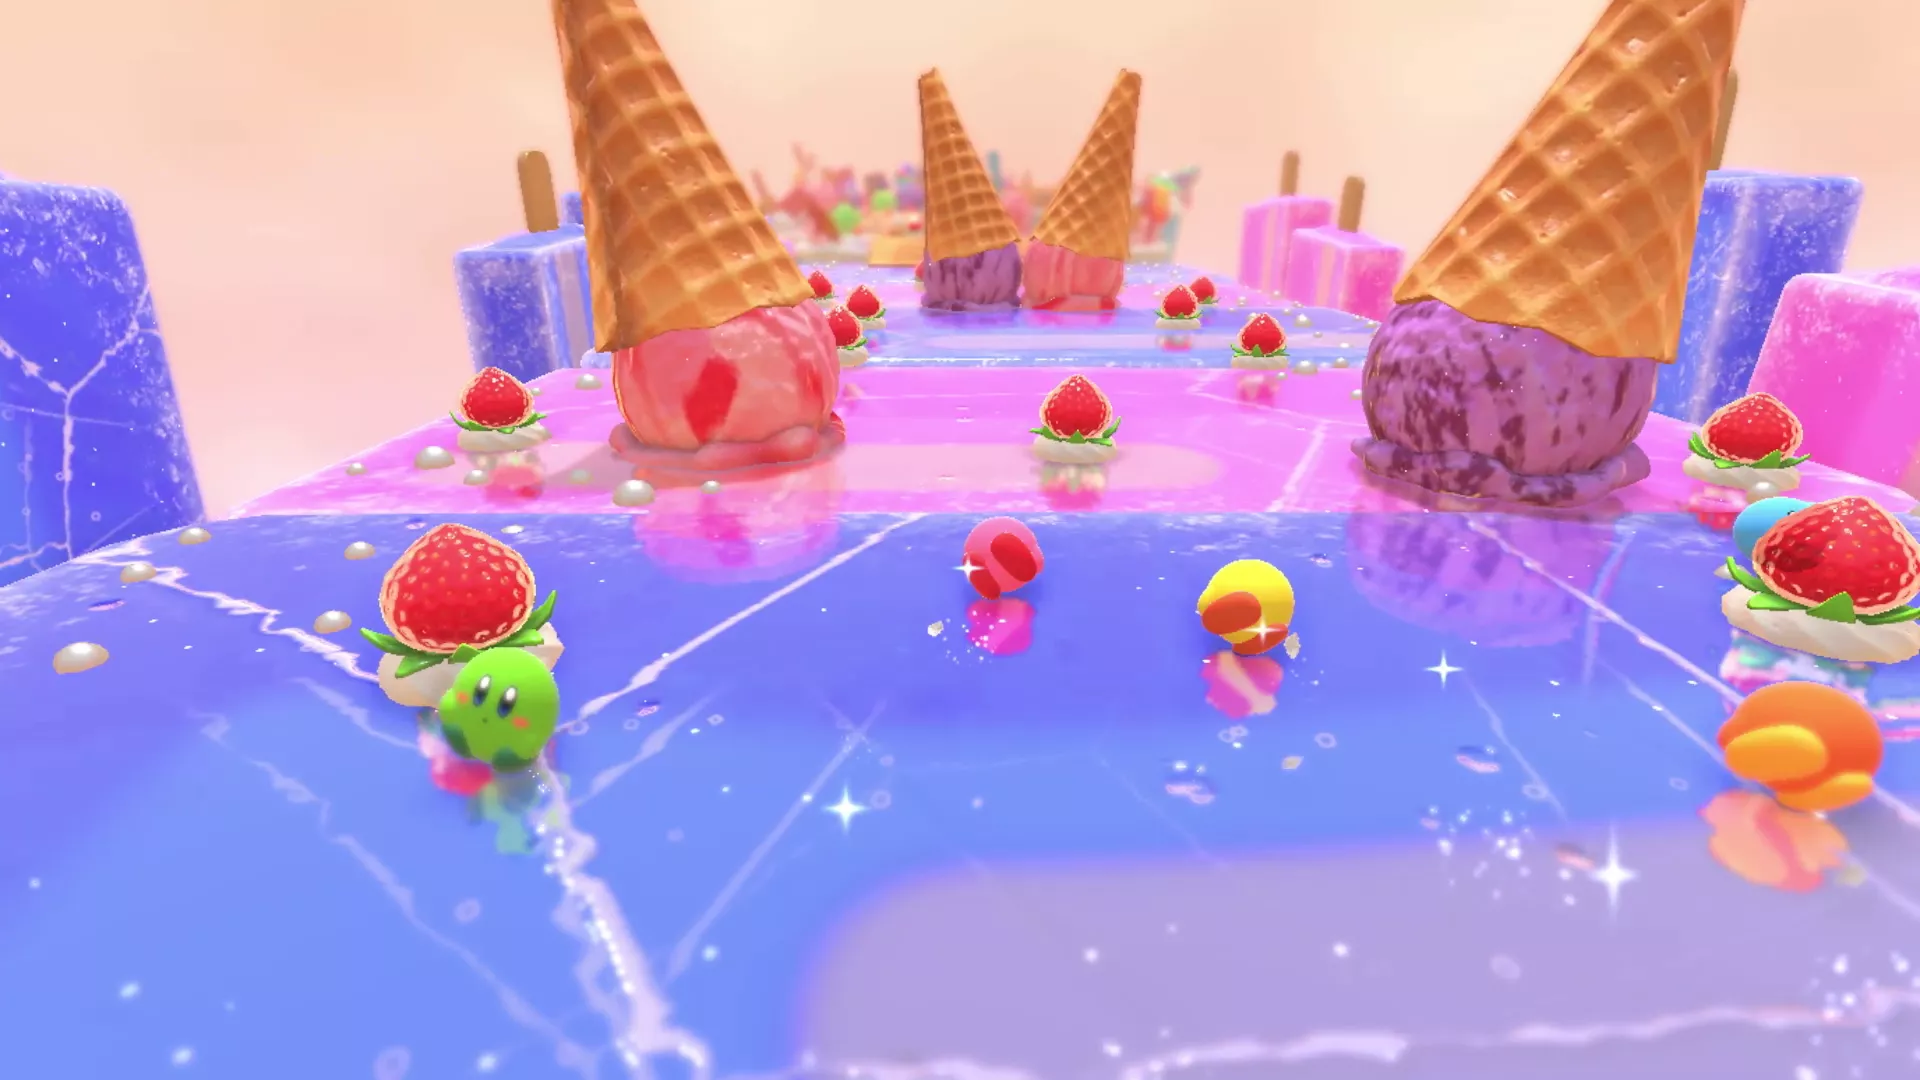 Kirby's Dream Buffet erklärt den Spielablauf im Detail Heropic